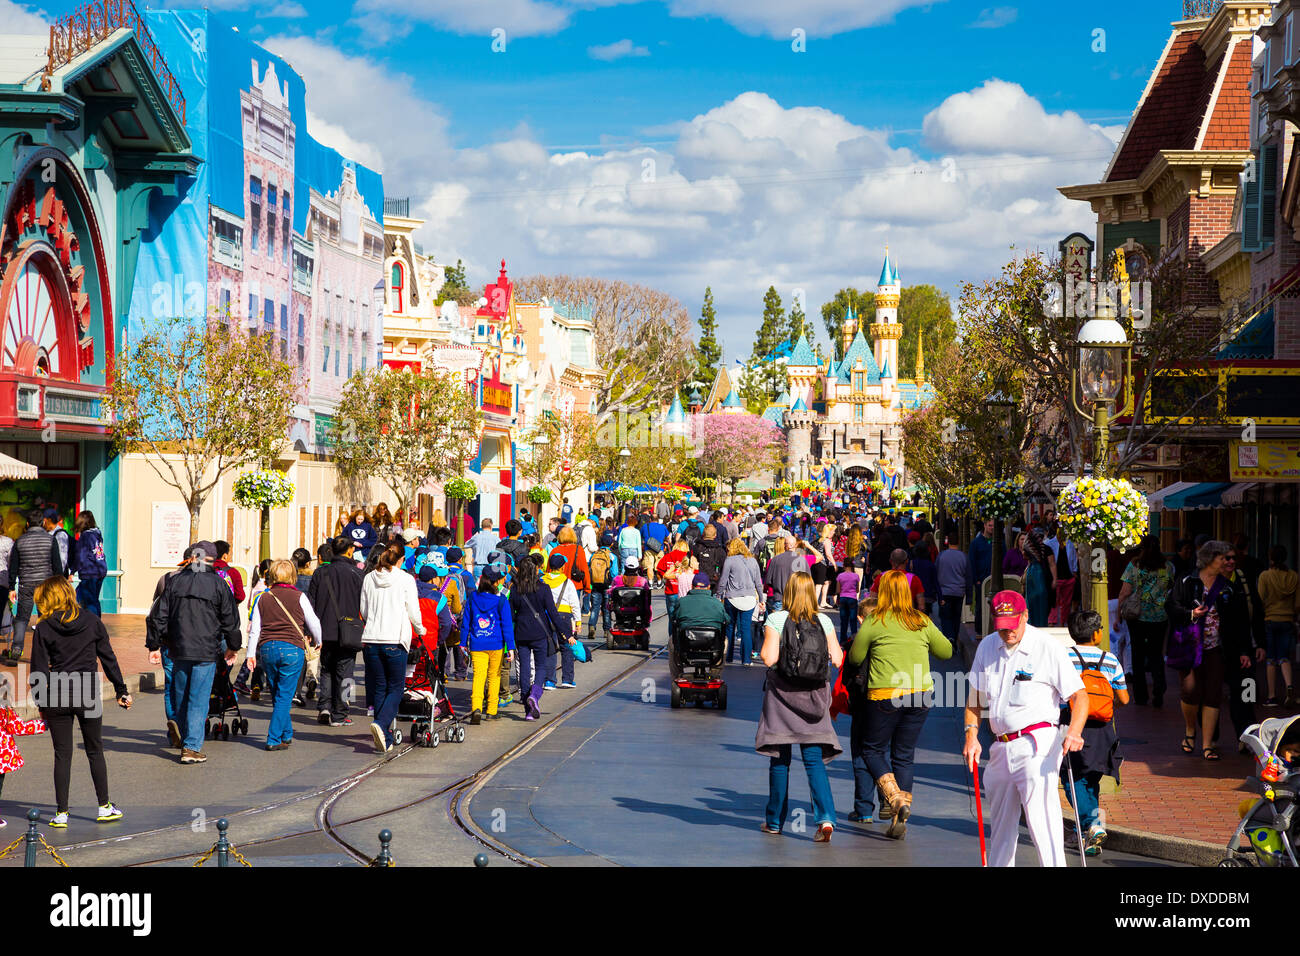 Anaheim, Kalifornien, USA - 4. Februar 2014: Disneyland Main Street ist sehr voll, als der Park öffnet und Menschen eintreten. Stockfoto